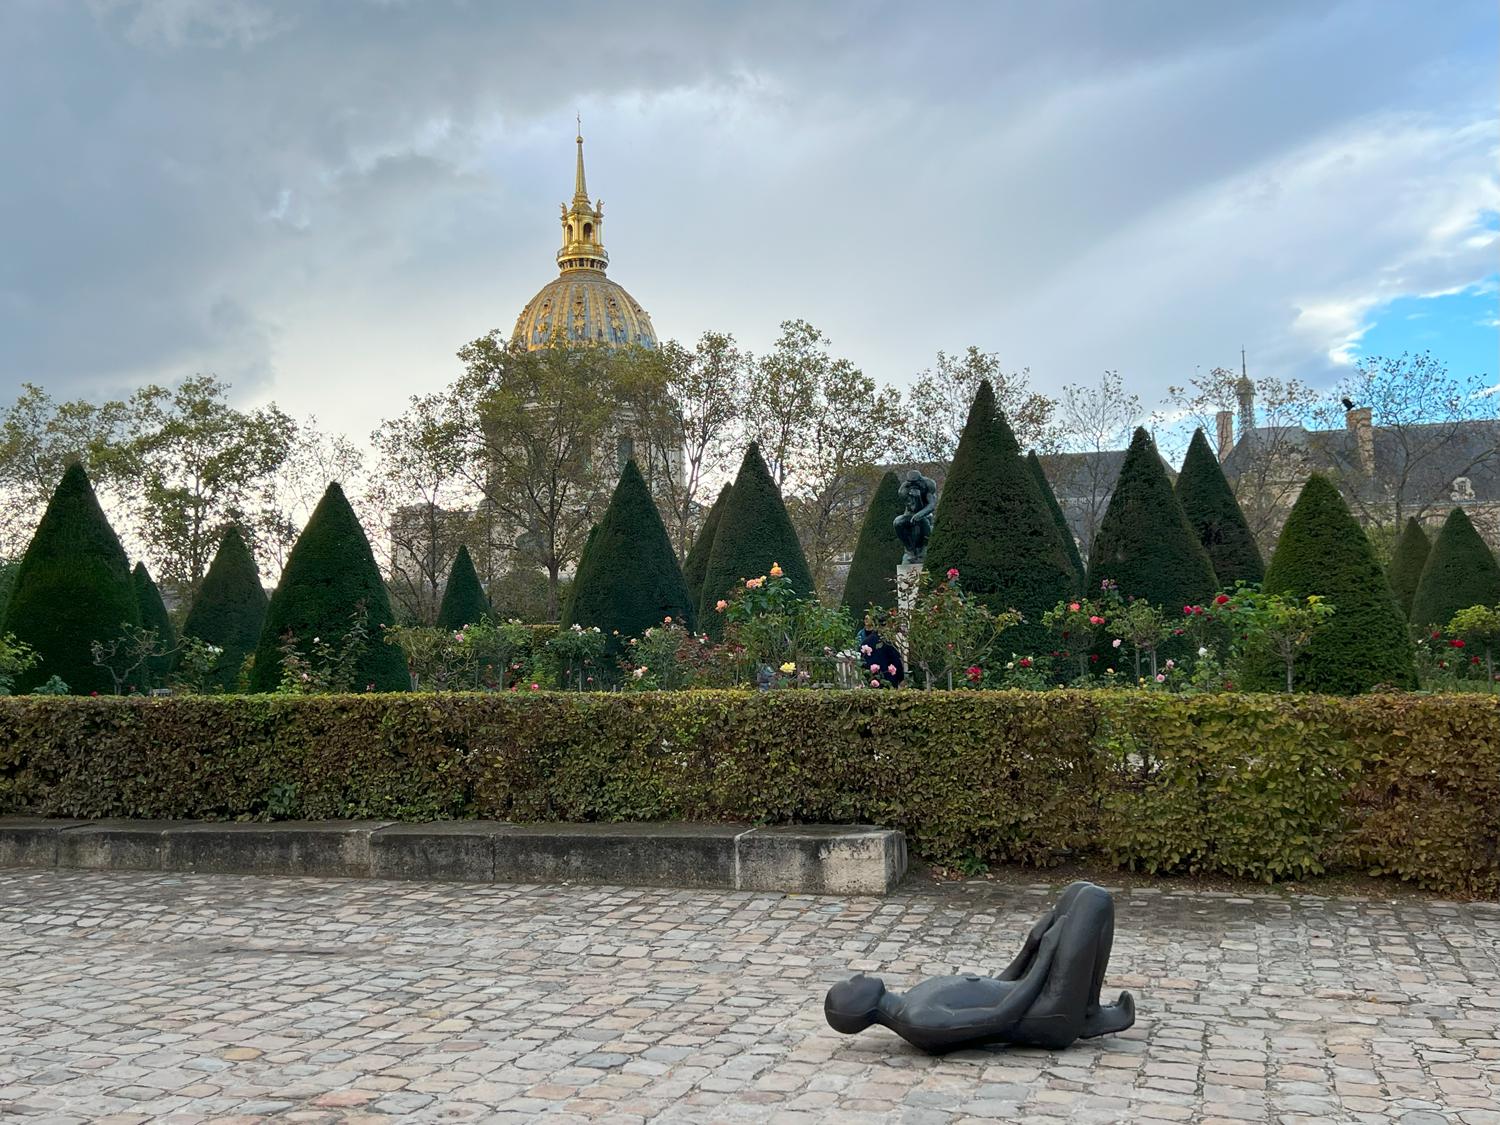 Скульптура Энтони Гормли в рамках его персональной выставки в Музее Родена